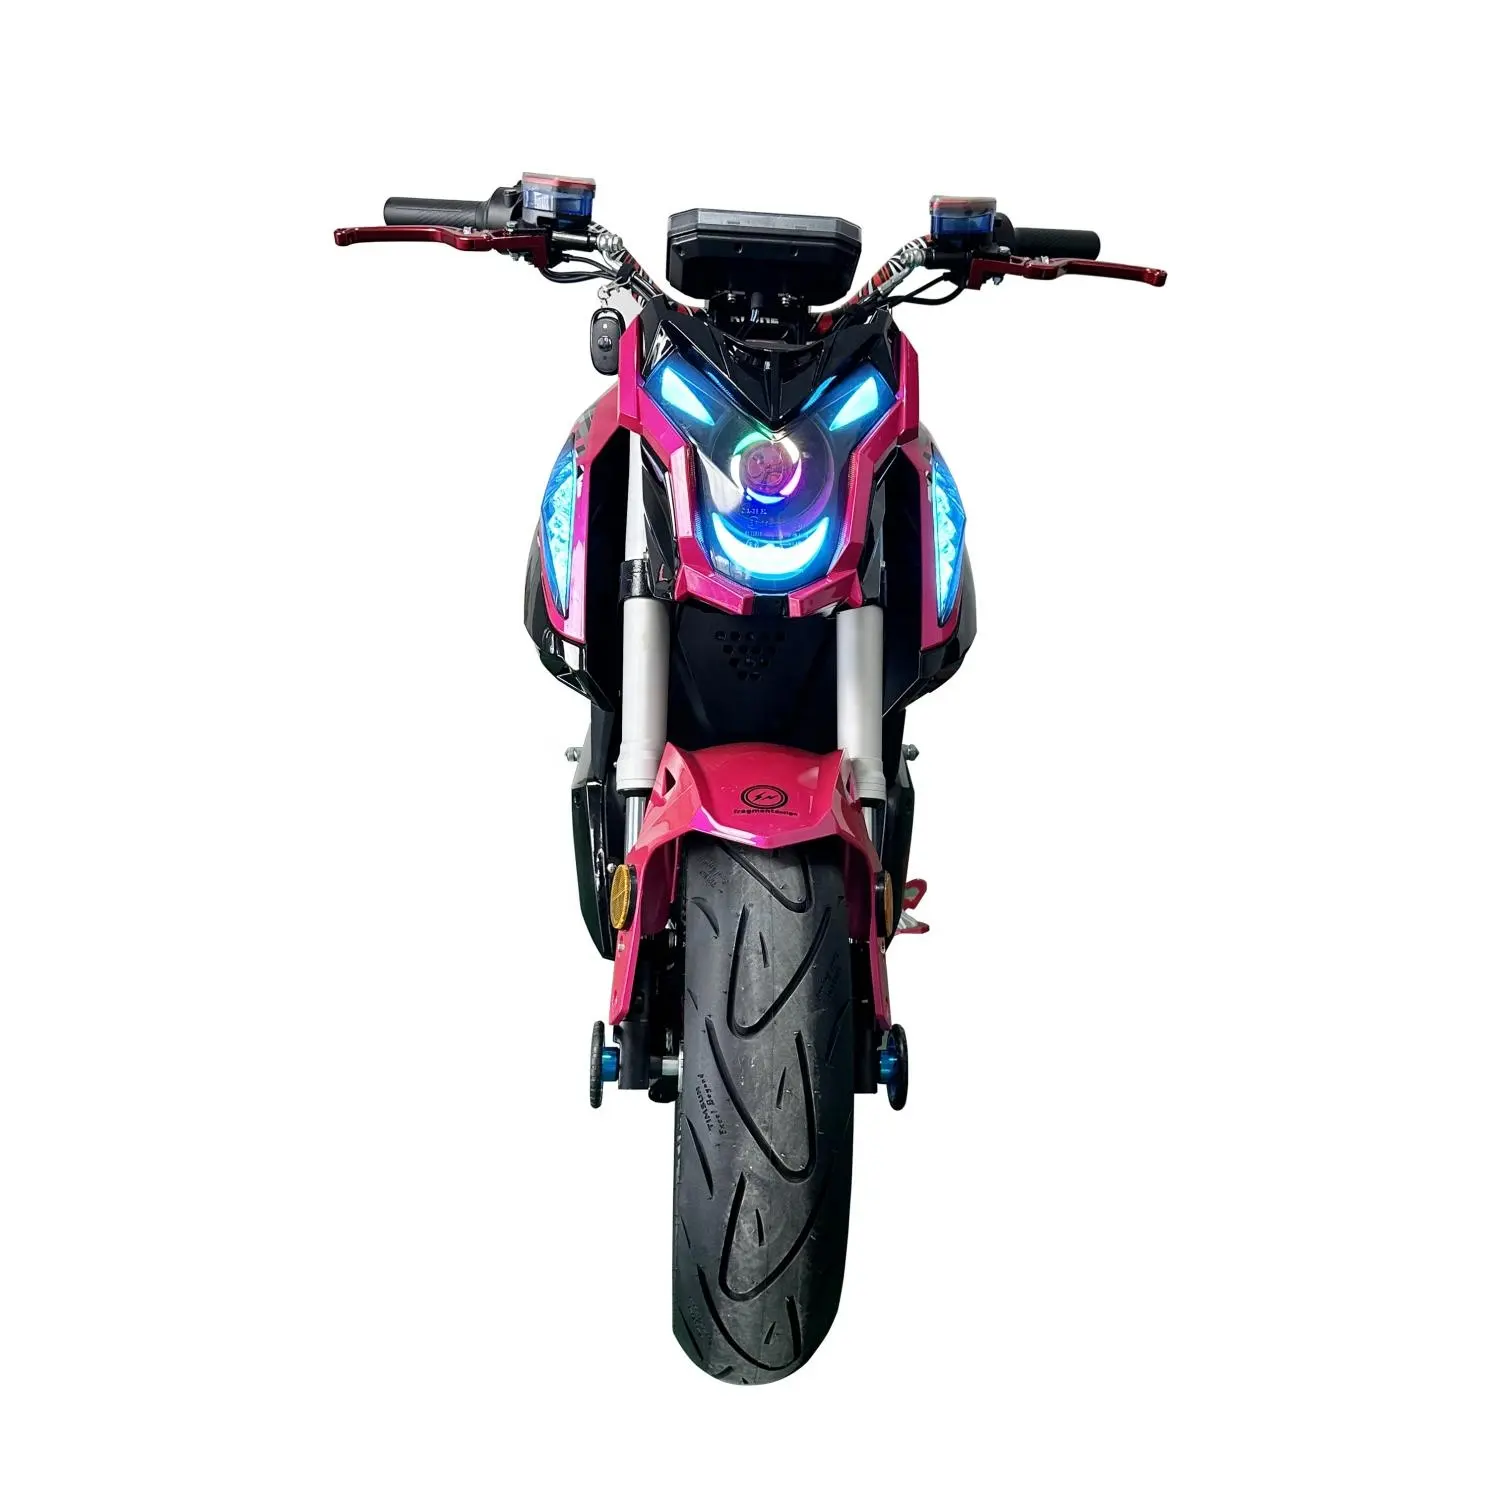 Moto de sport américaine 72V 4000w Motos bon marché Moto électrique à grande vitesse avec échantillon gratuit 150km h s